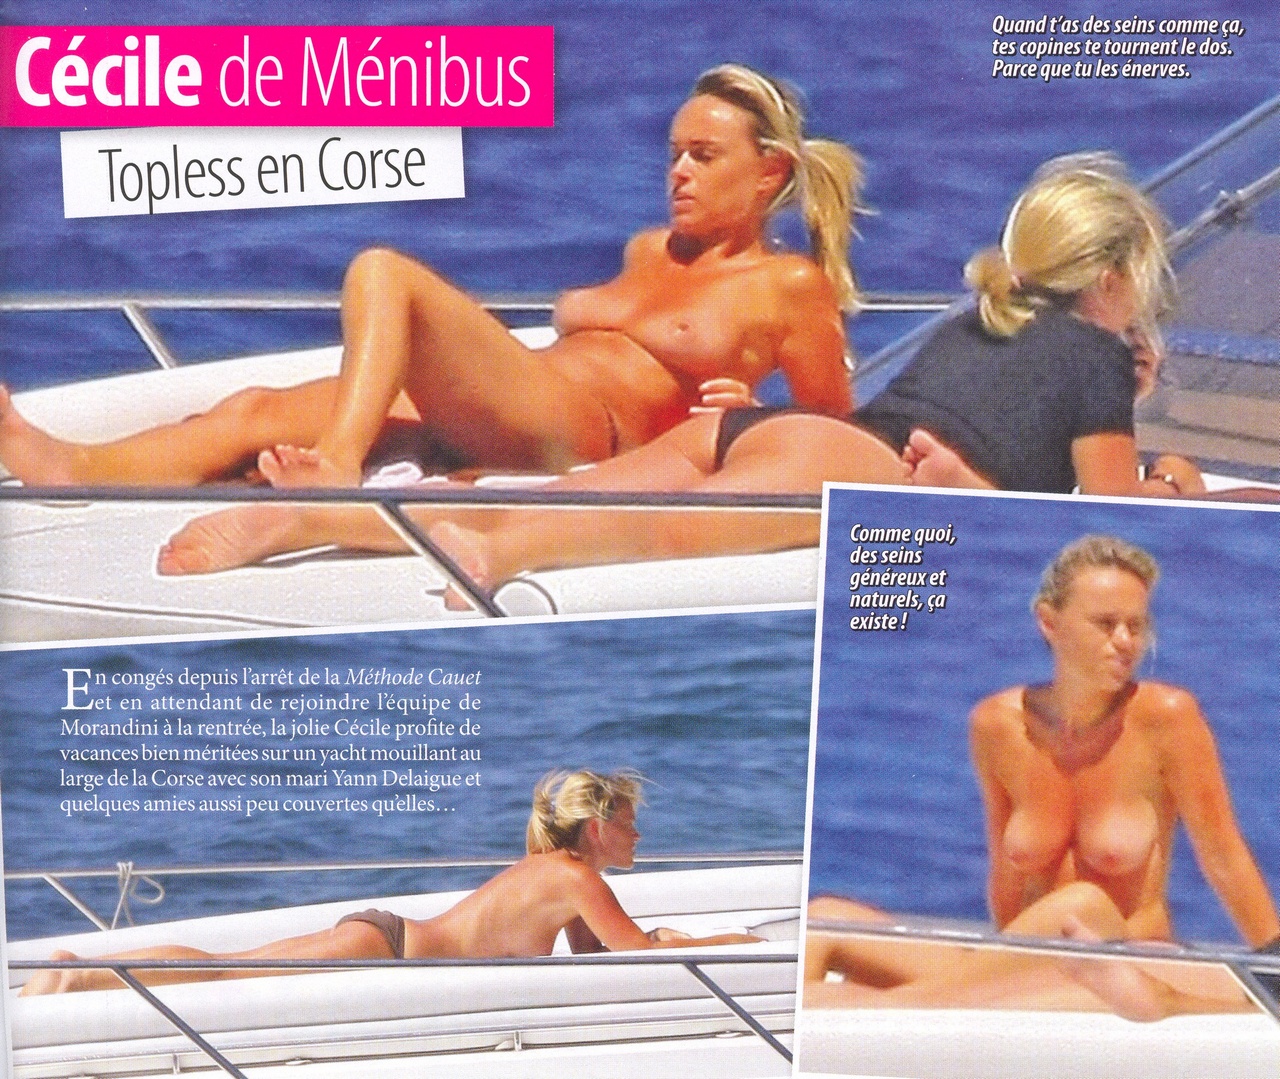 Cécile de Ménibus nue (topless) dans Oops 37 (photos) 1pic1day. 